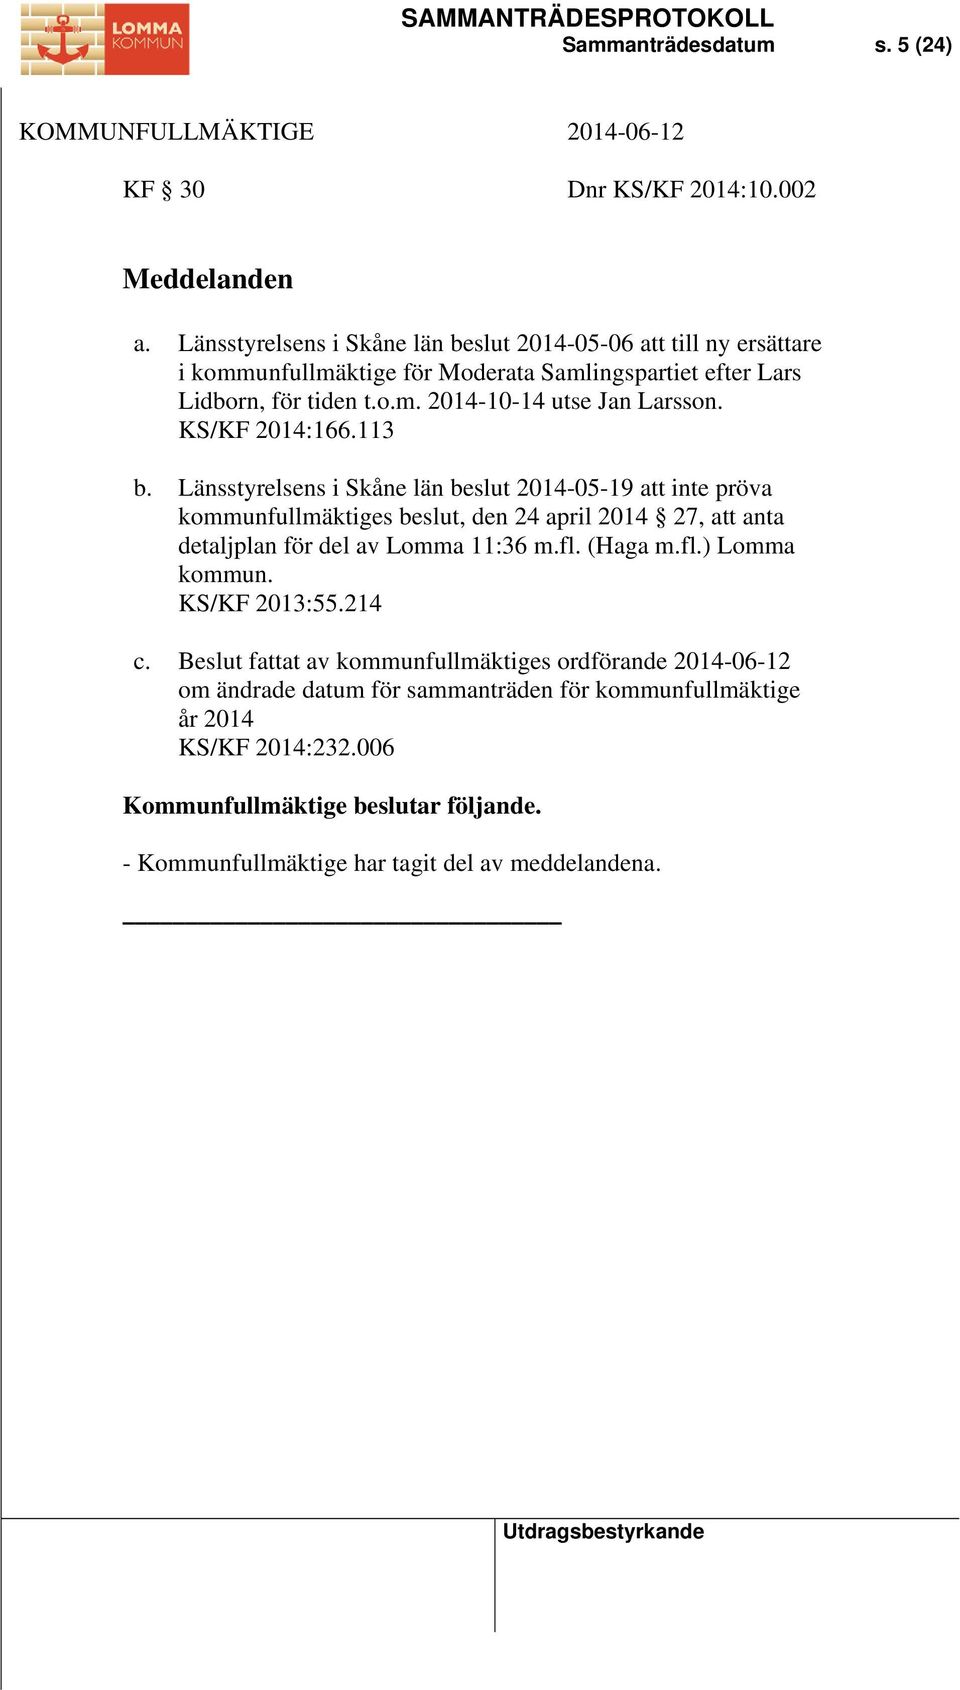 KS/KF 2014:166.113 b. Länsstyrelsens i Skåne län beslut 2014-05-19 att inte pröva kommunfullmäktiges beslut, den 24 april 2014 27, att anta detaljplan för del av Lomma 11:36 m.